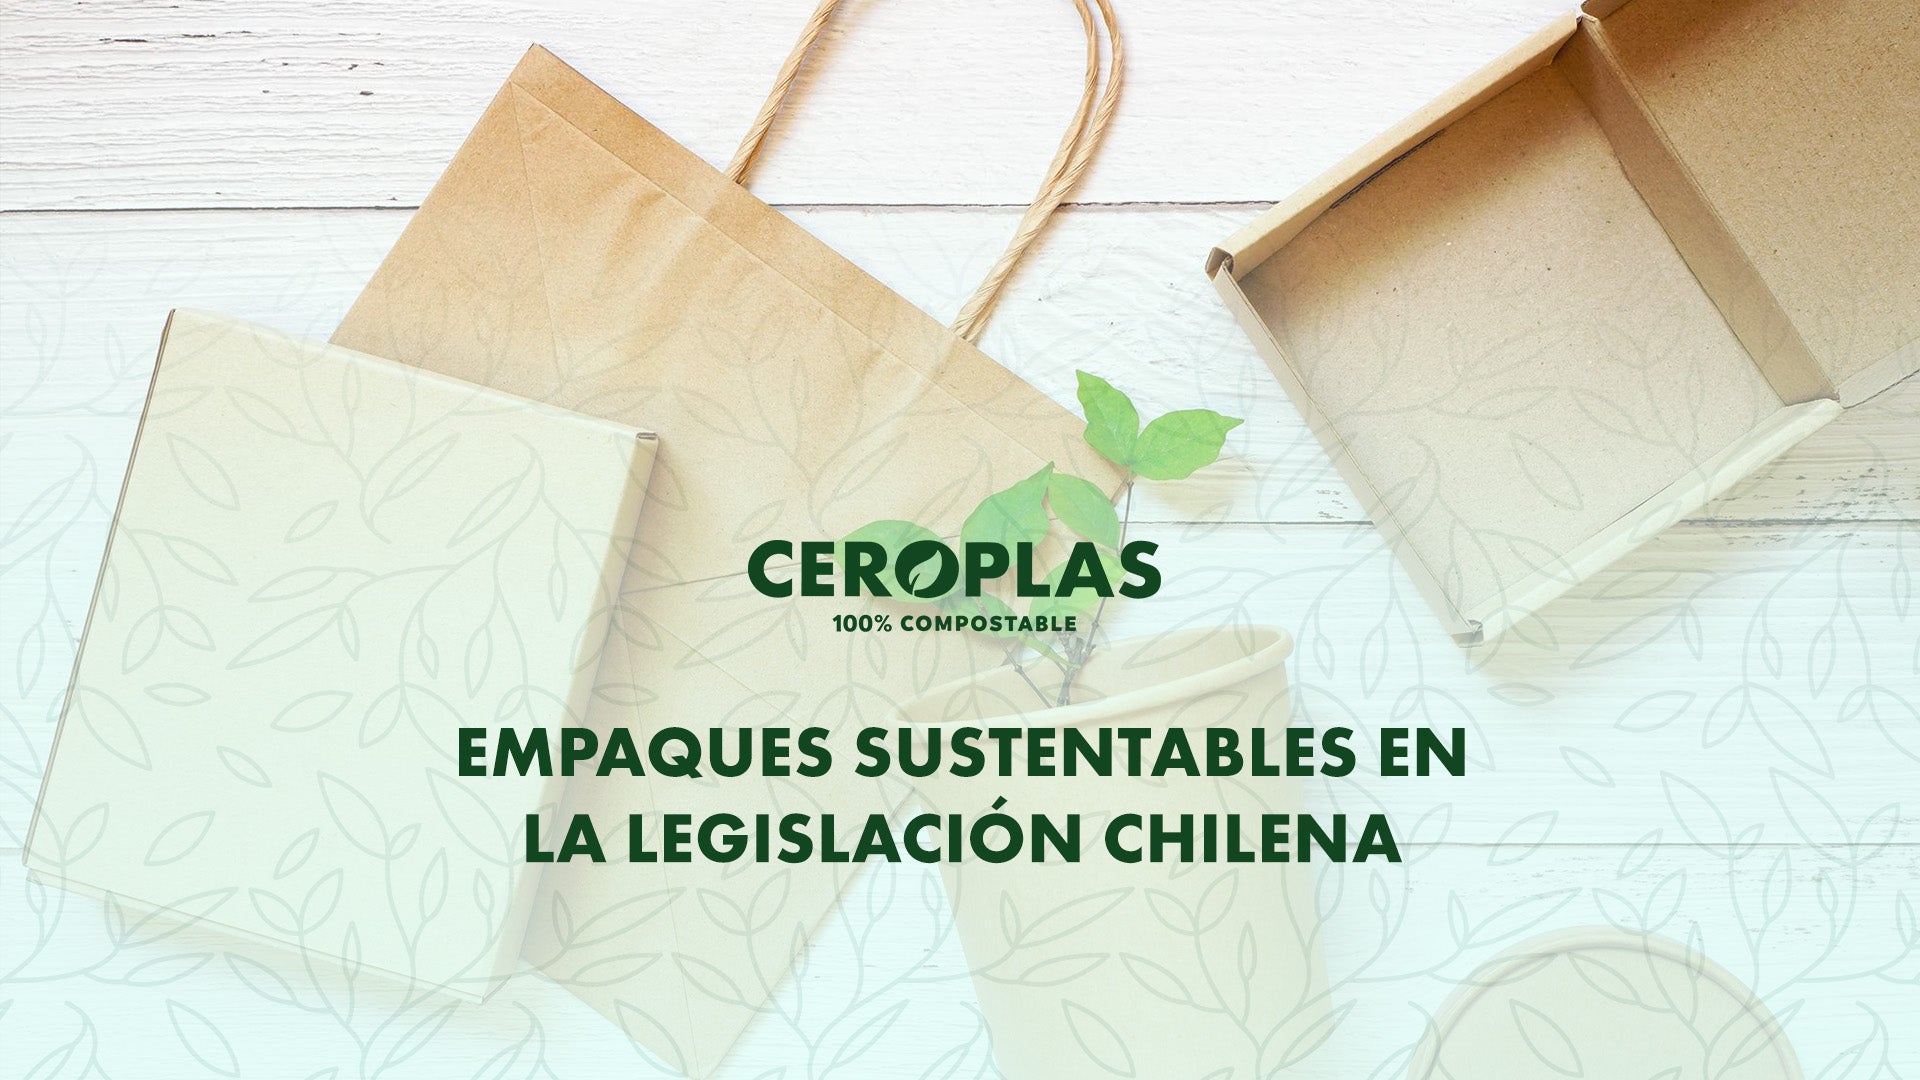 Empaques sustentables en la legislación chilena